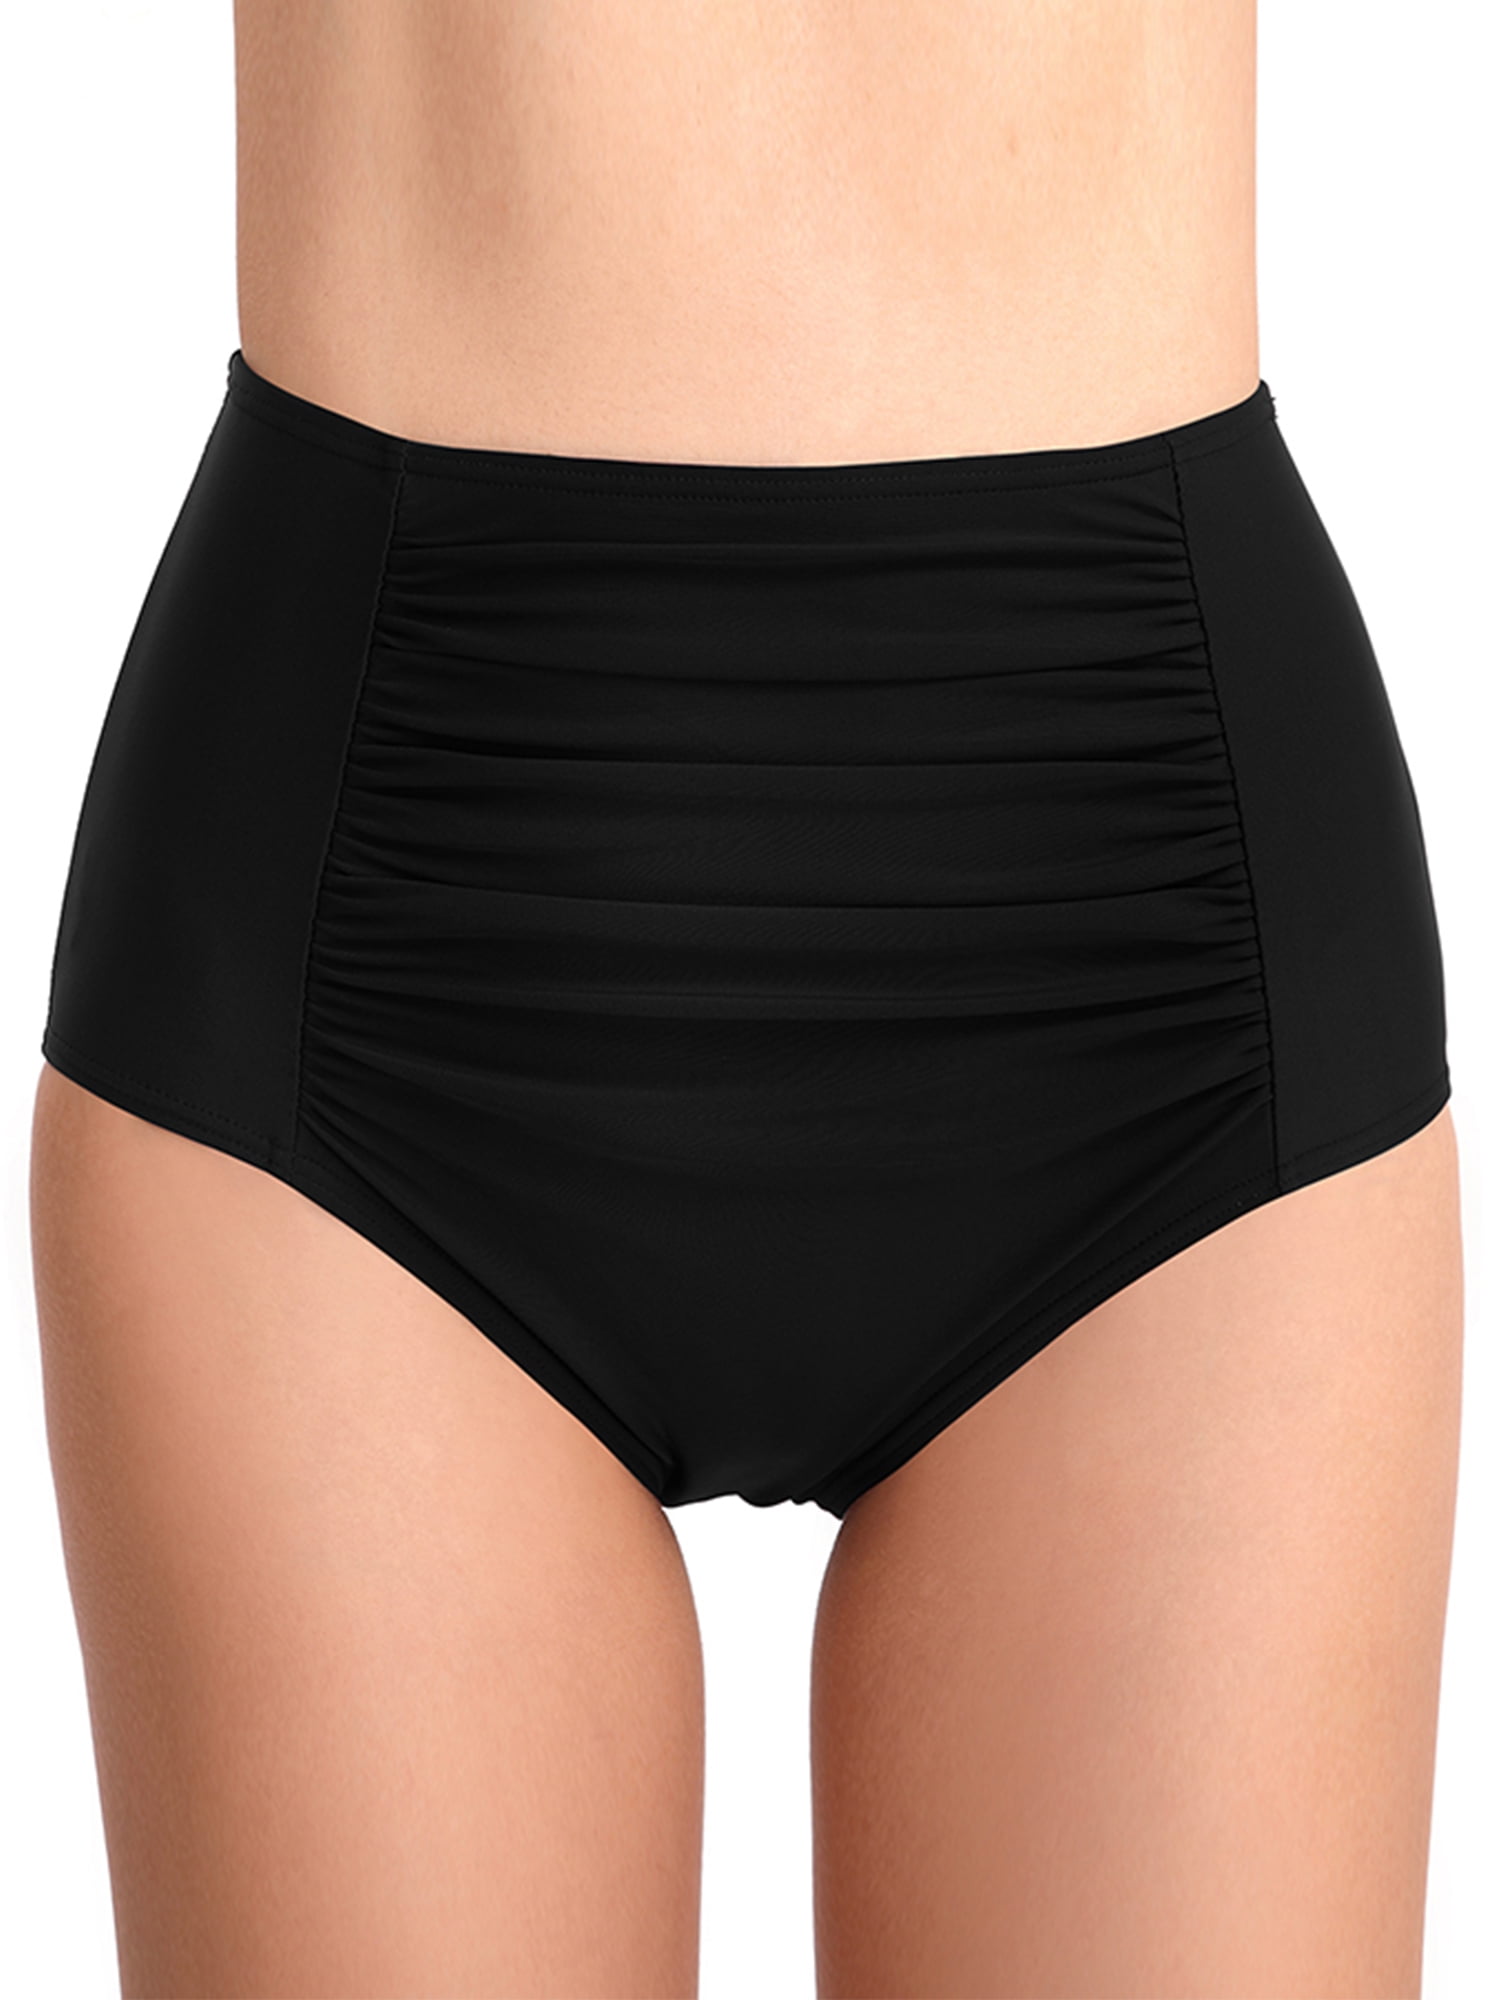 Yilisha Womens Tummy Control Swim Shorts Black Plus Size High